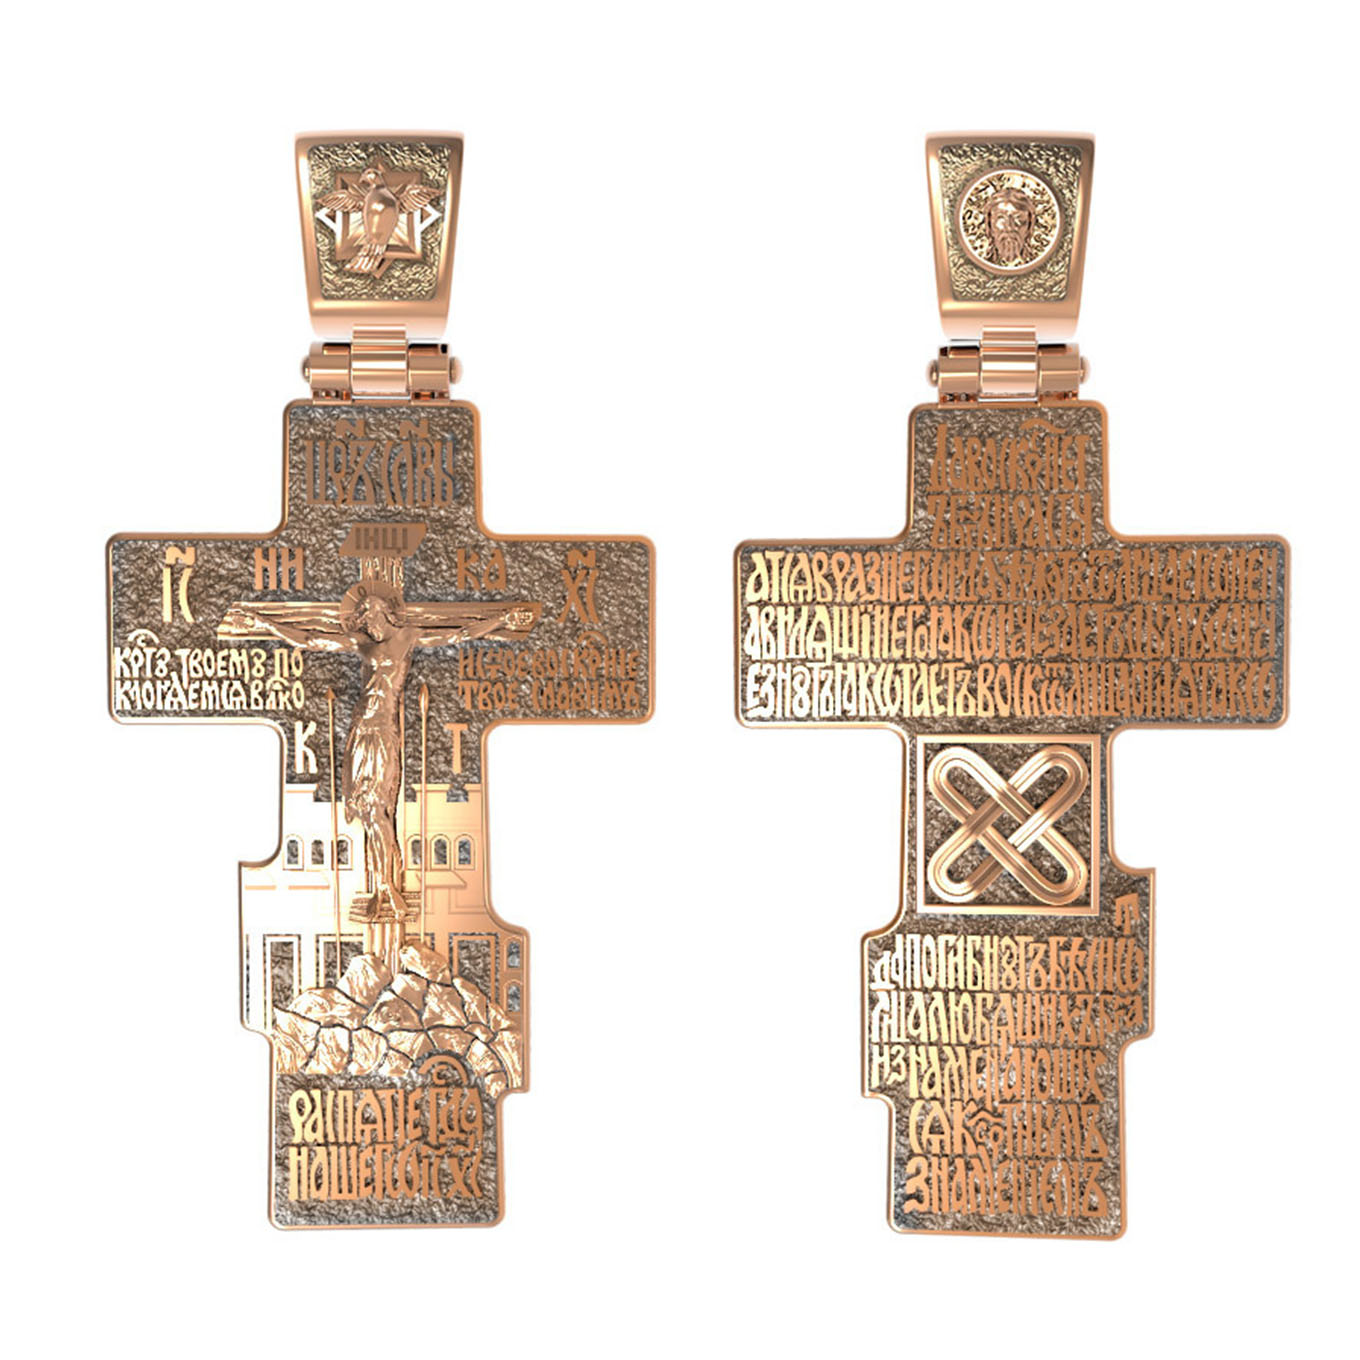 Золотой Нательный Крестик Мужской Православный Купить